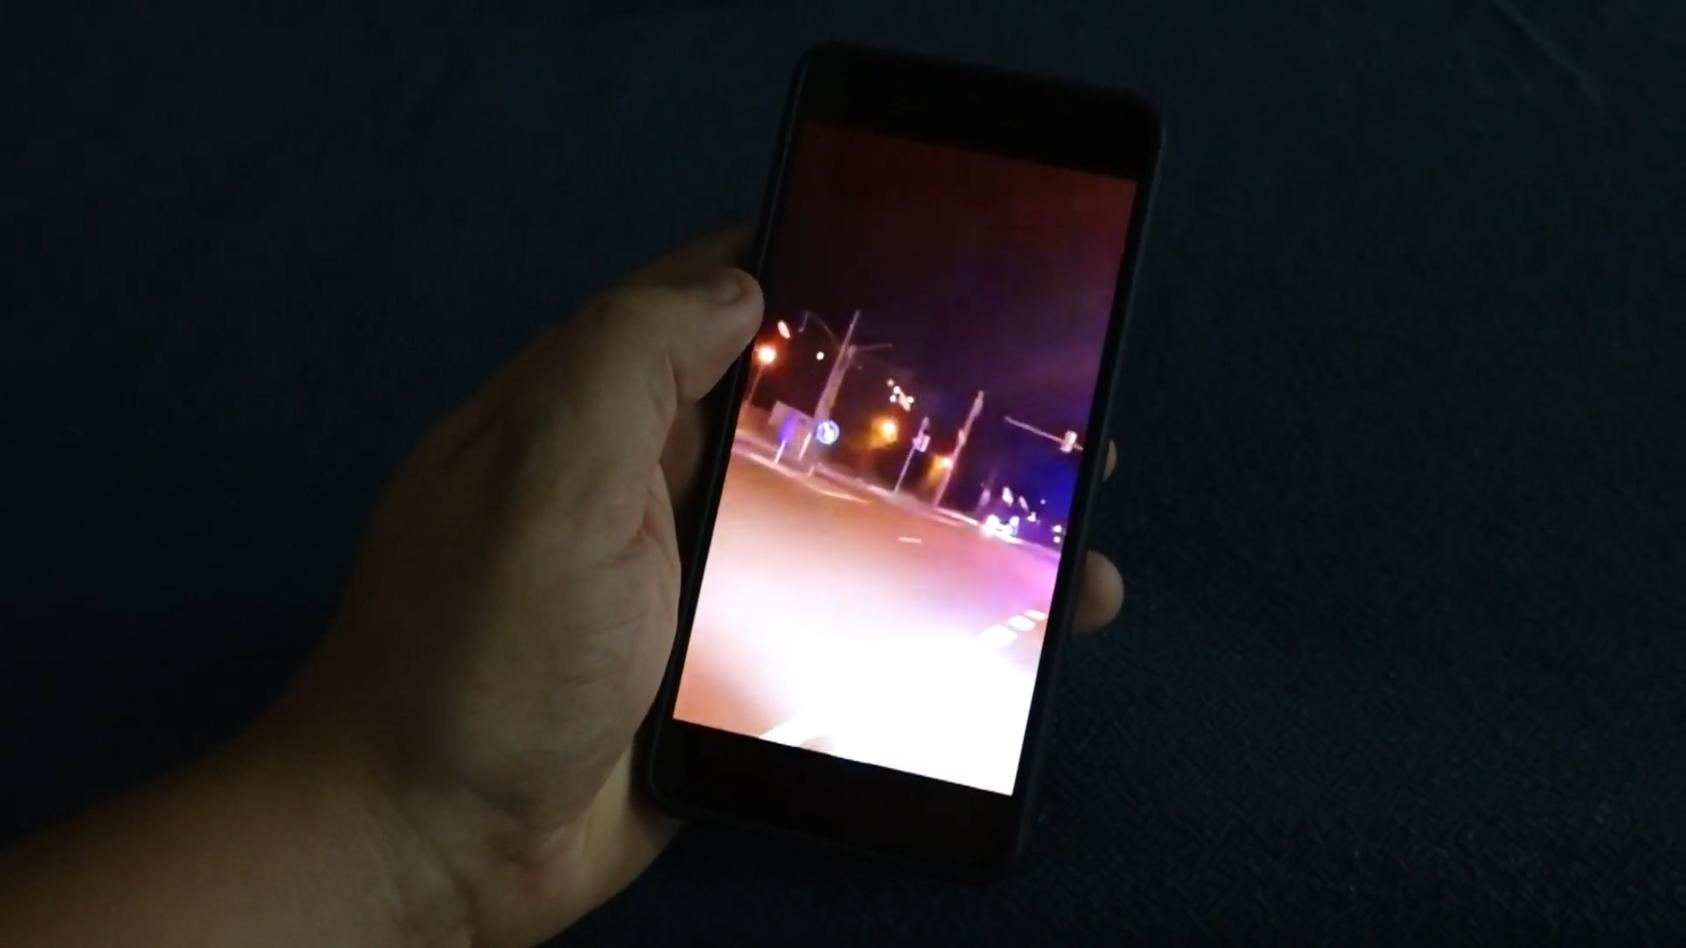 Polizei hat angeblich auf Autofahrer geschossen Leipzig: Handy-Video soll Schüsse belegen